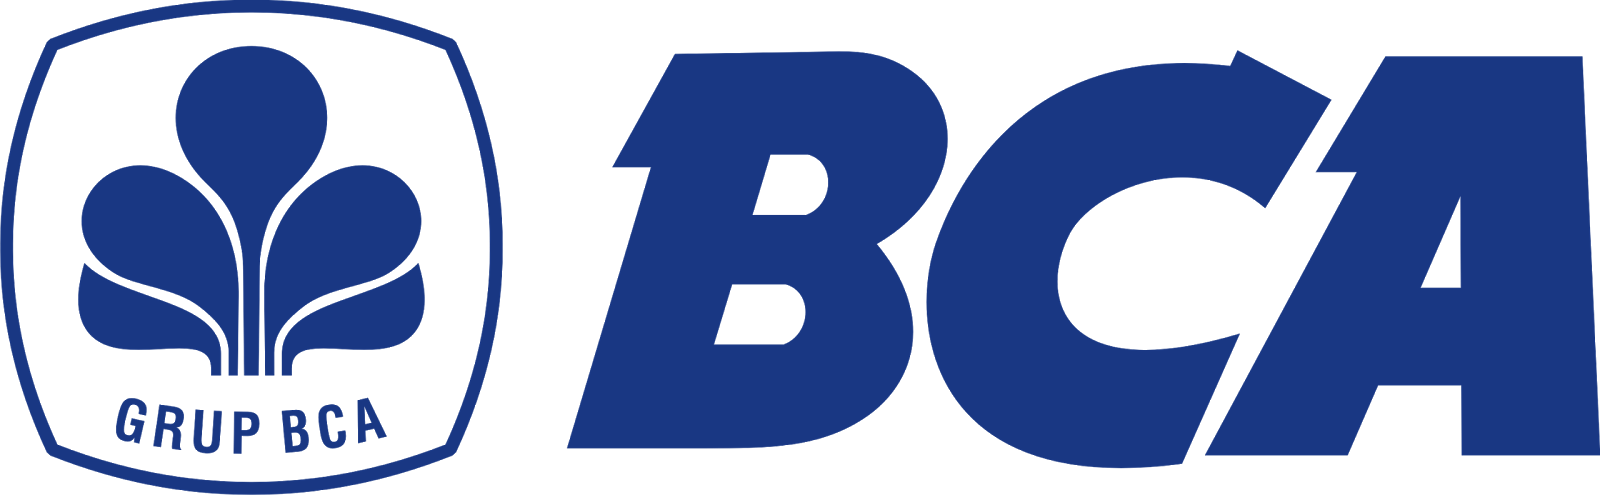 Logo BCA (Bank Central Asia) - Free Vector CDR - Logo Lambang Indonesia